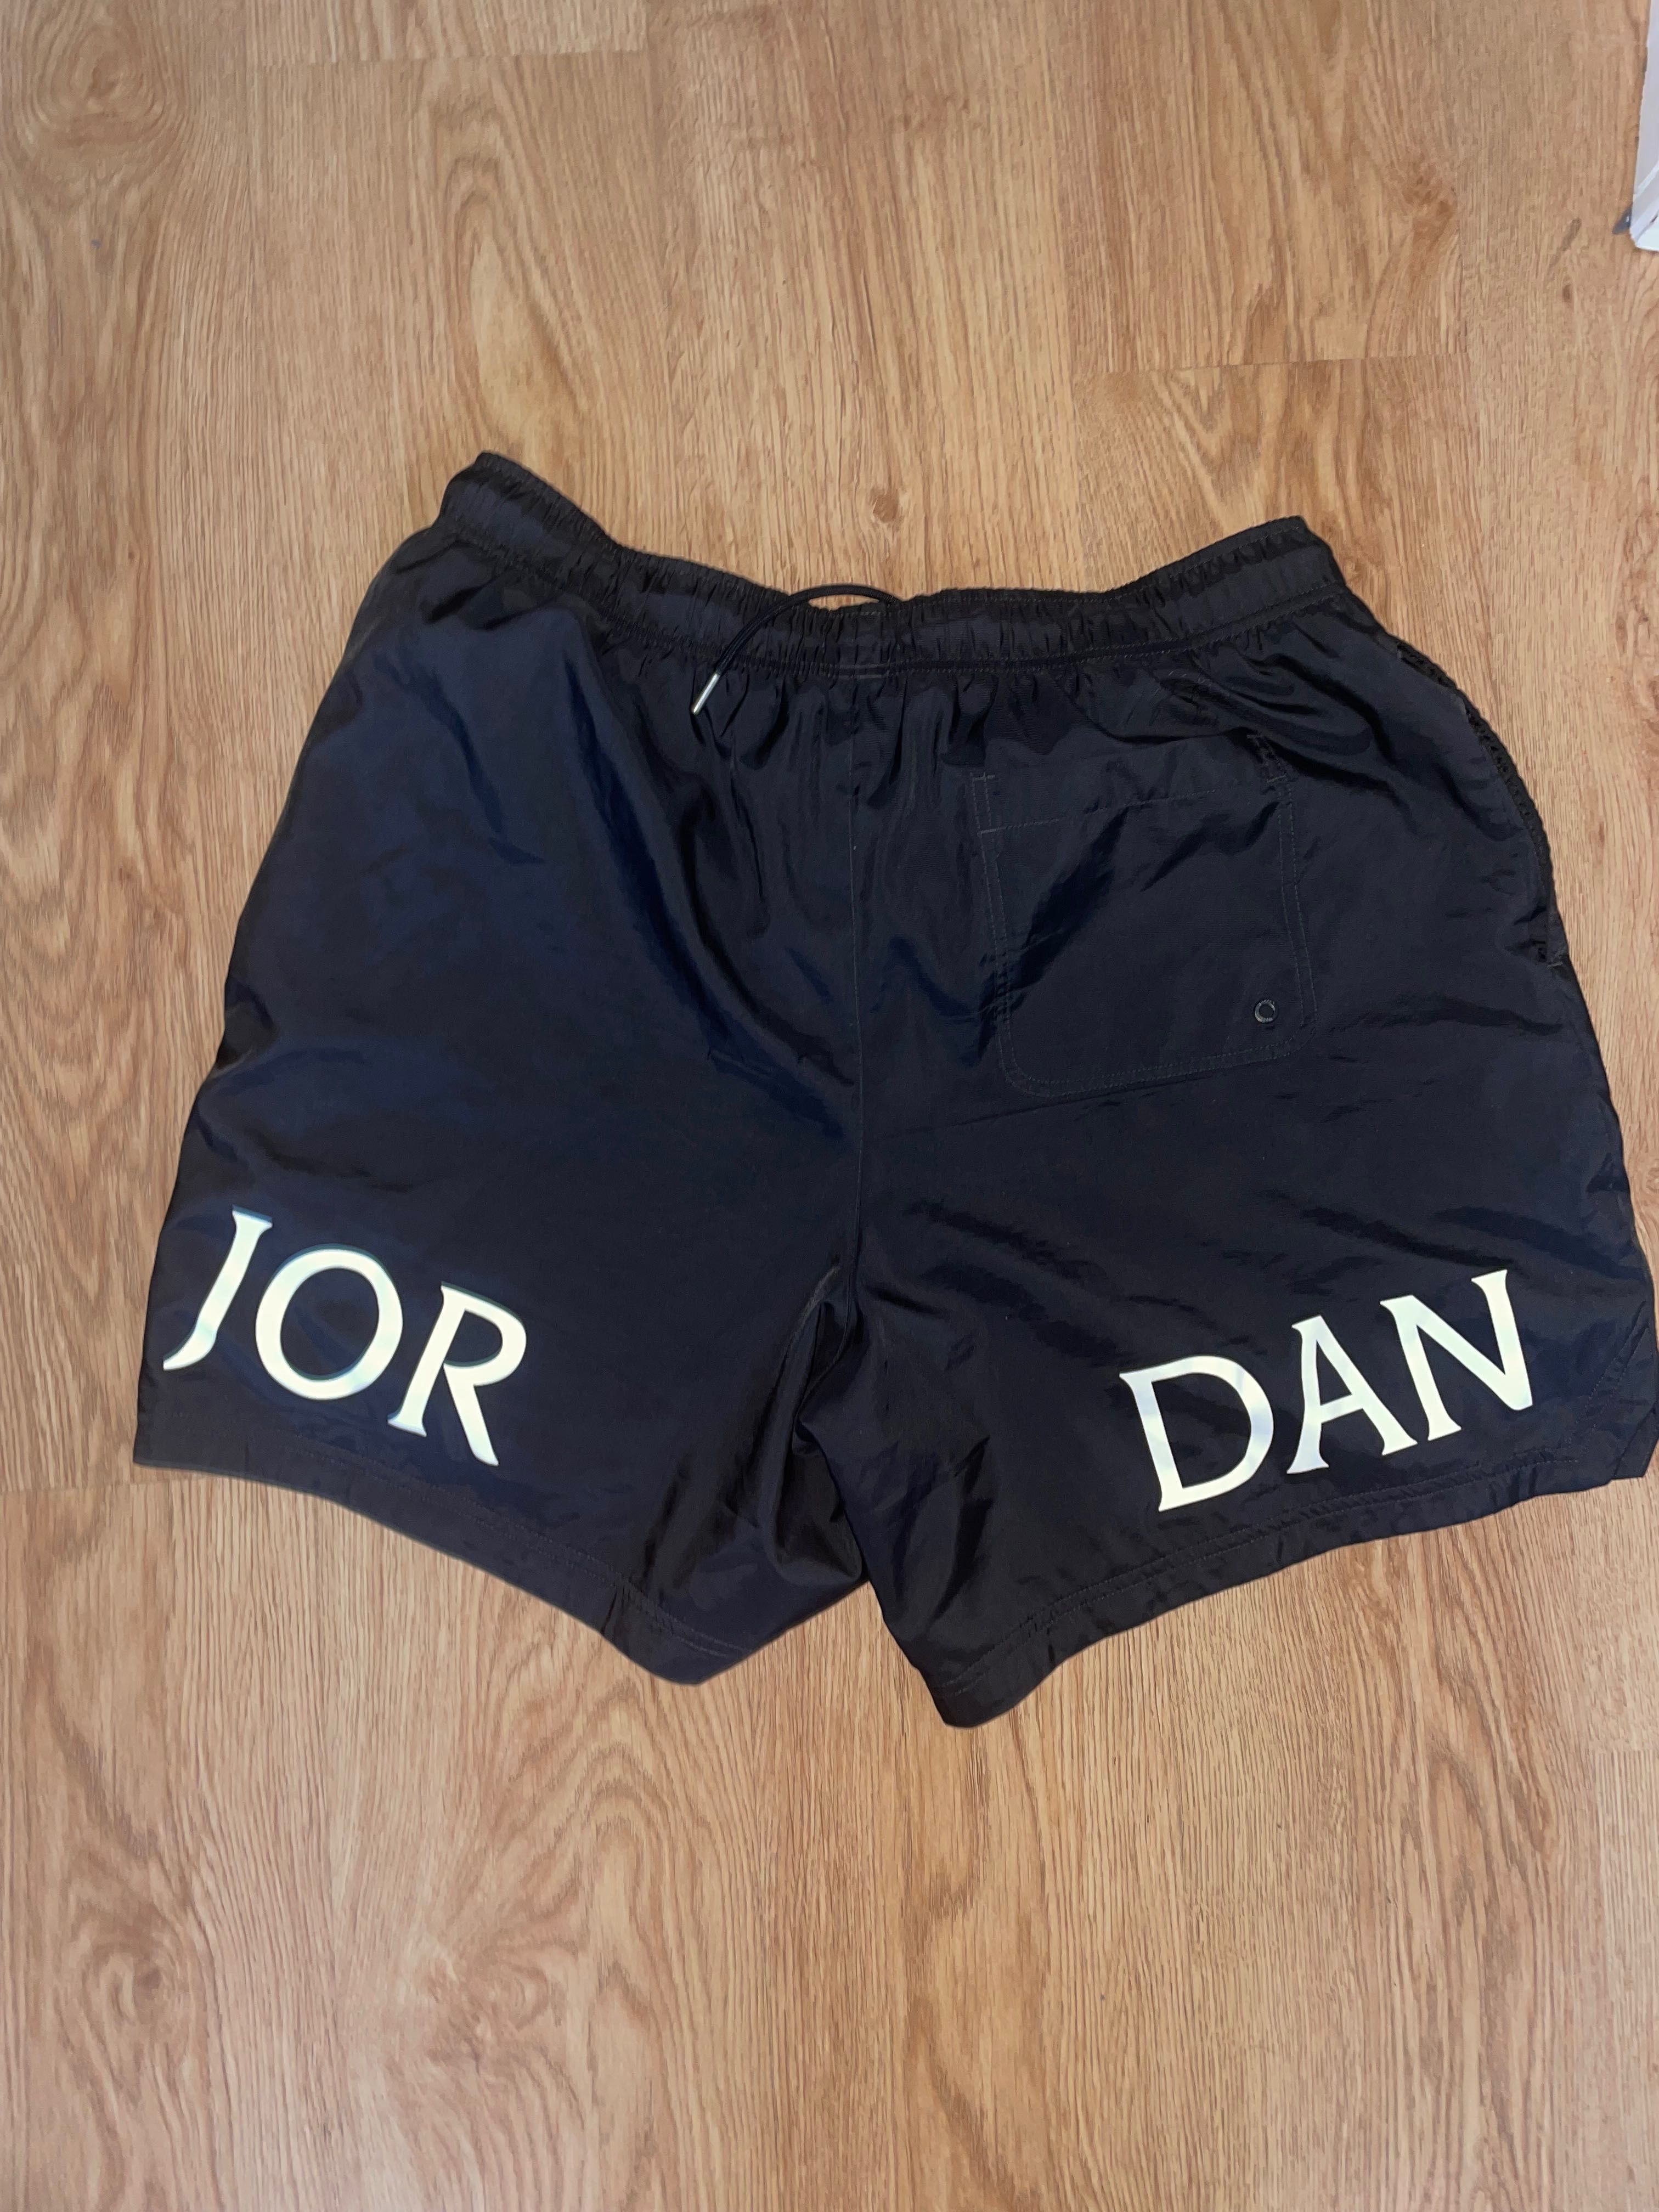 Jordan shorts tamanho xxl